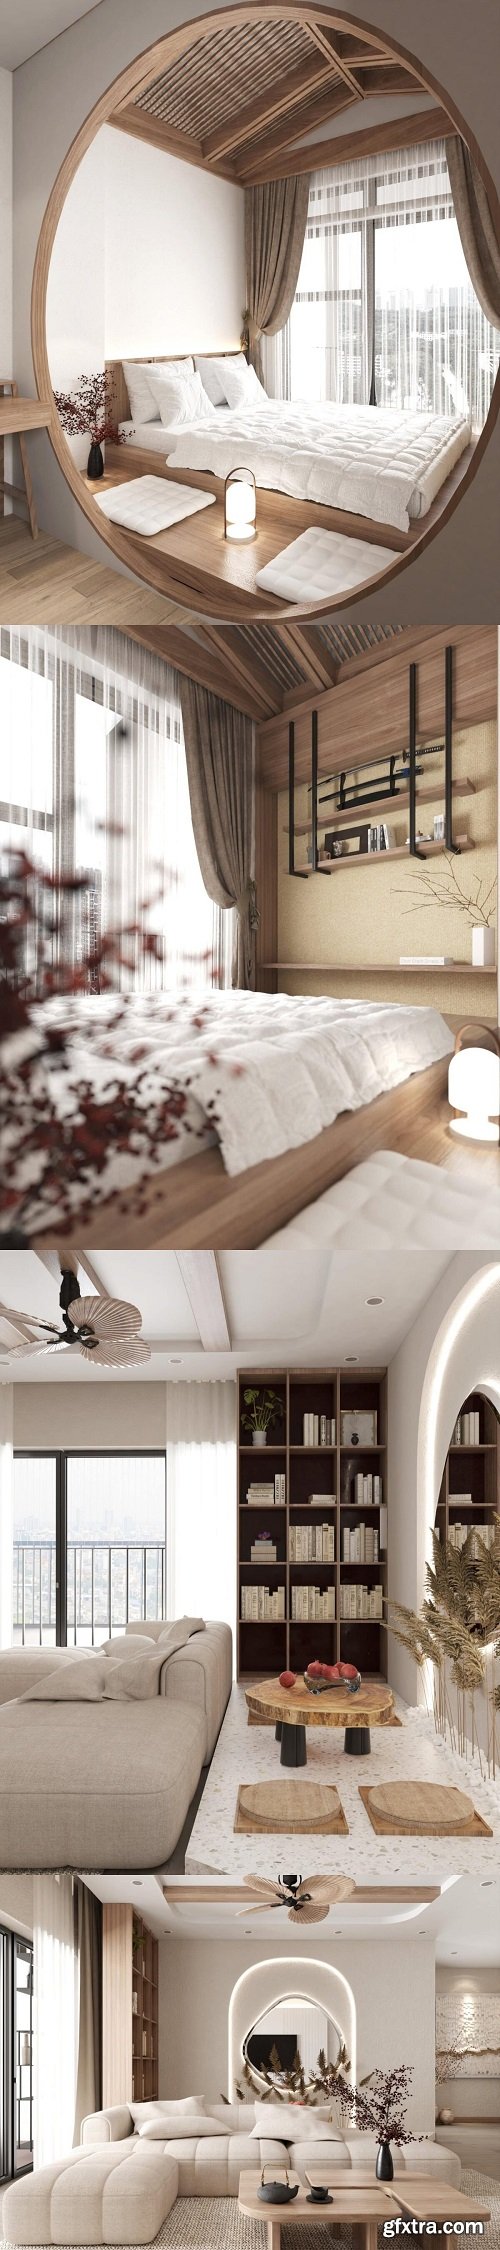 Bedroom Interior Model by Vu Toan